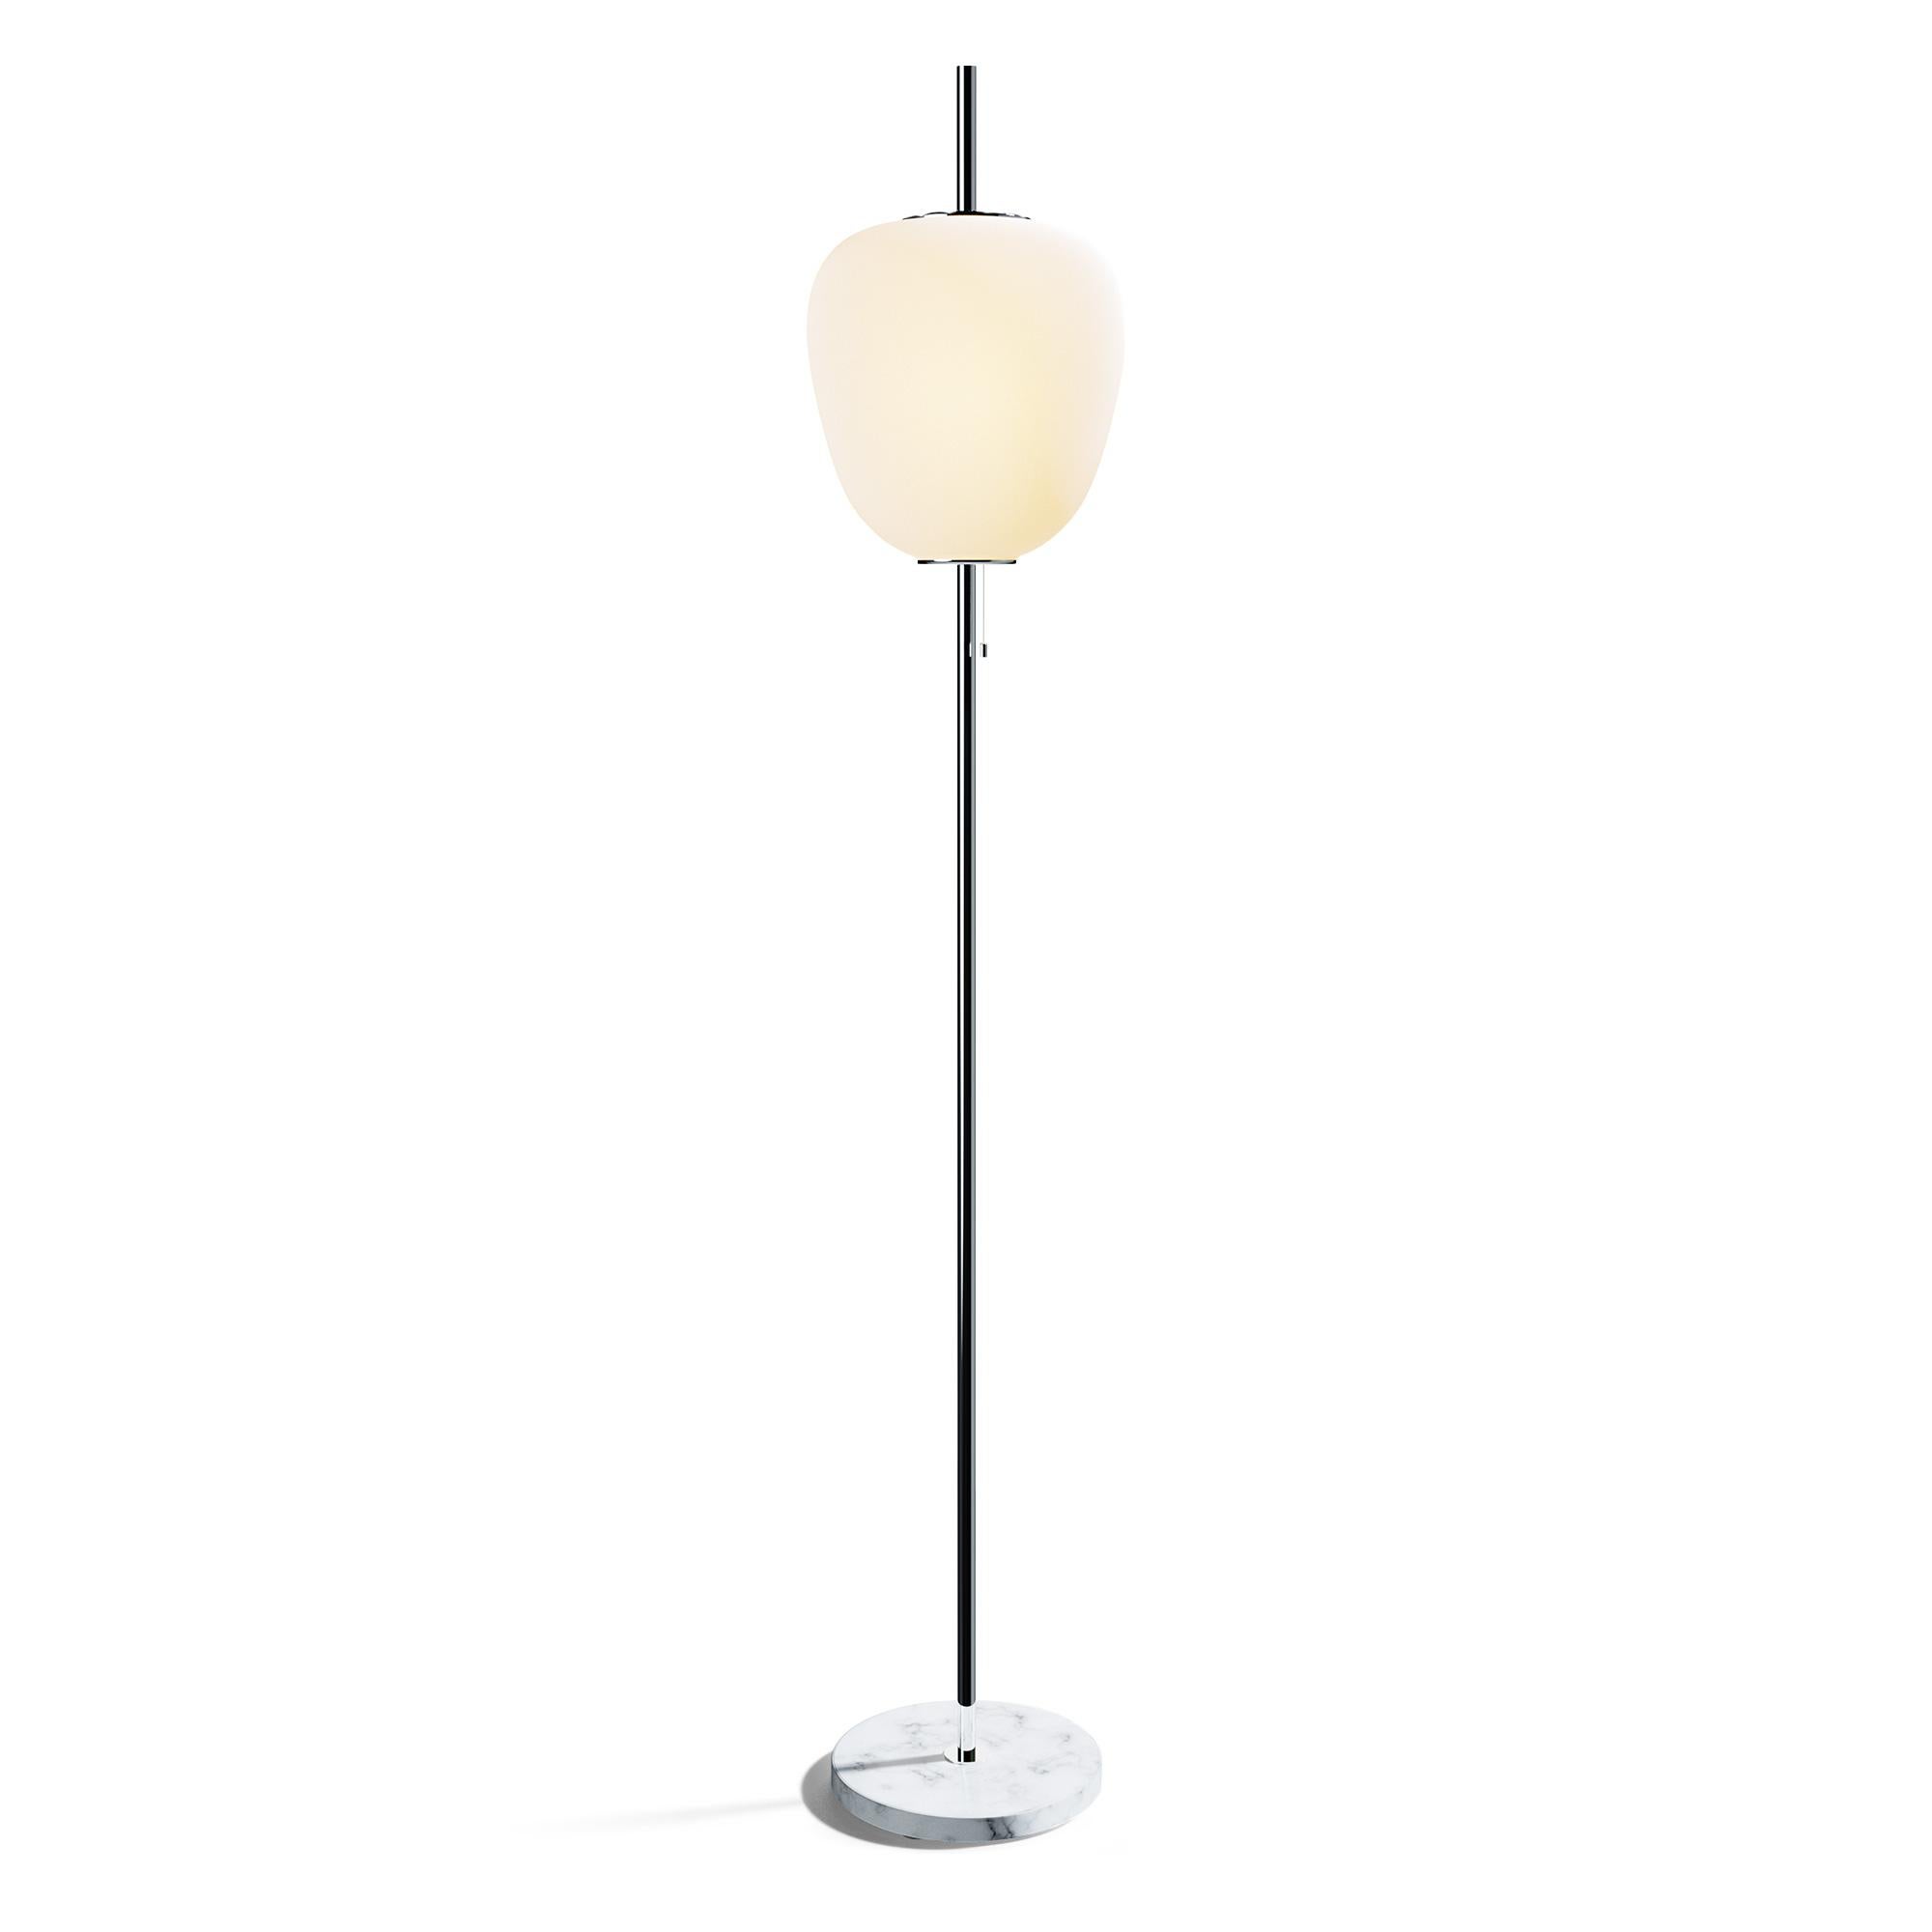 Glass Chrome J14 Tall Floor Lamp by Disderot For Sale